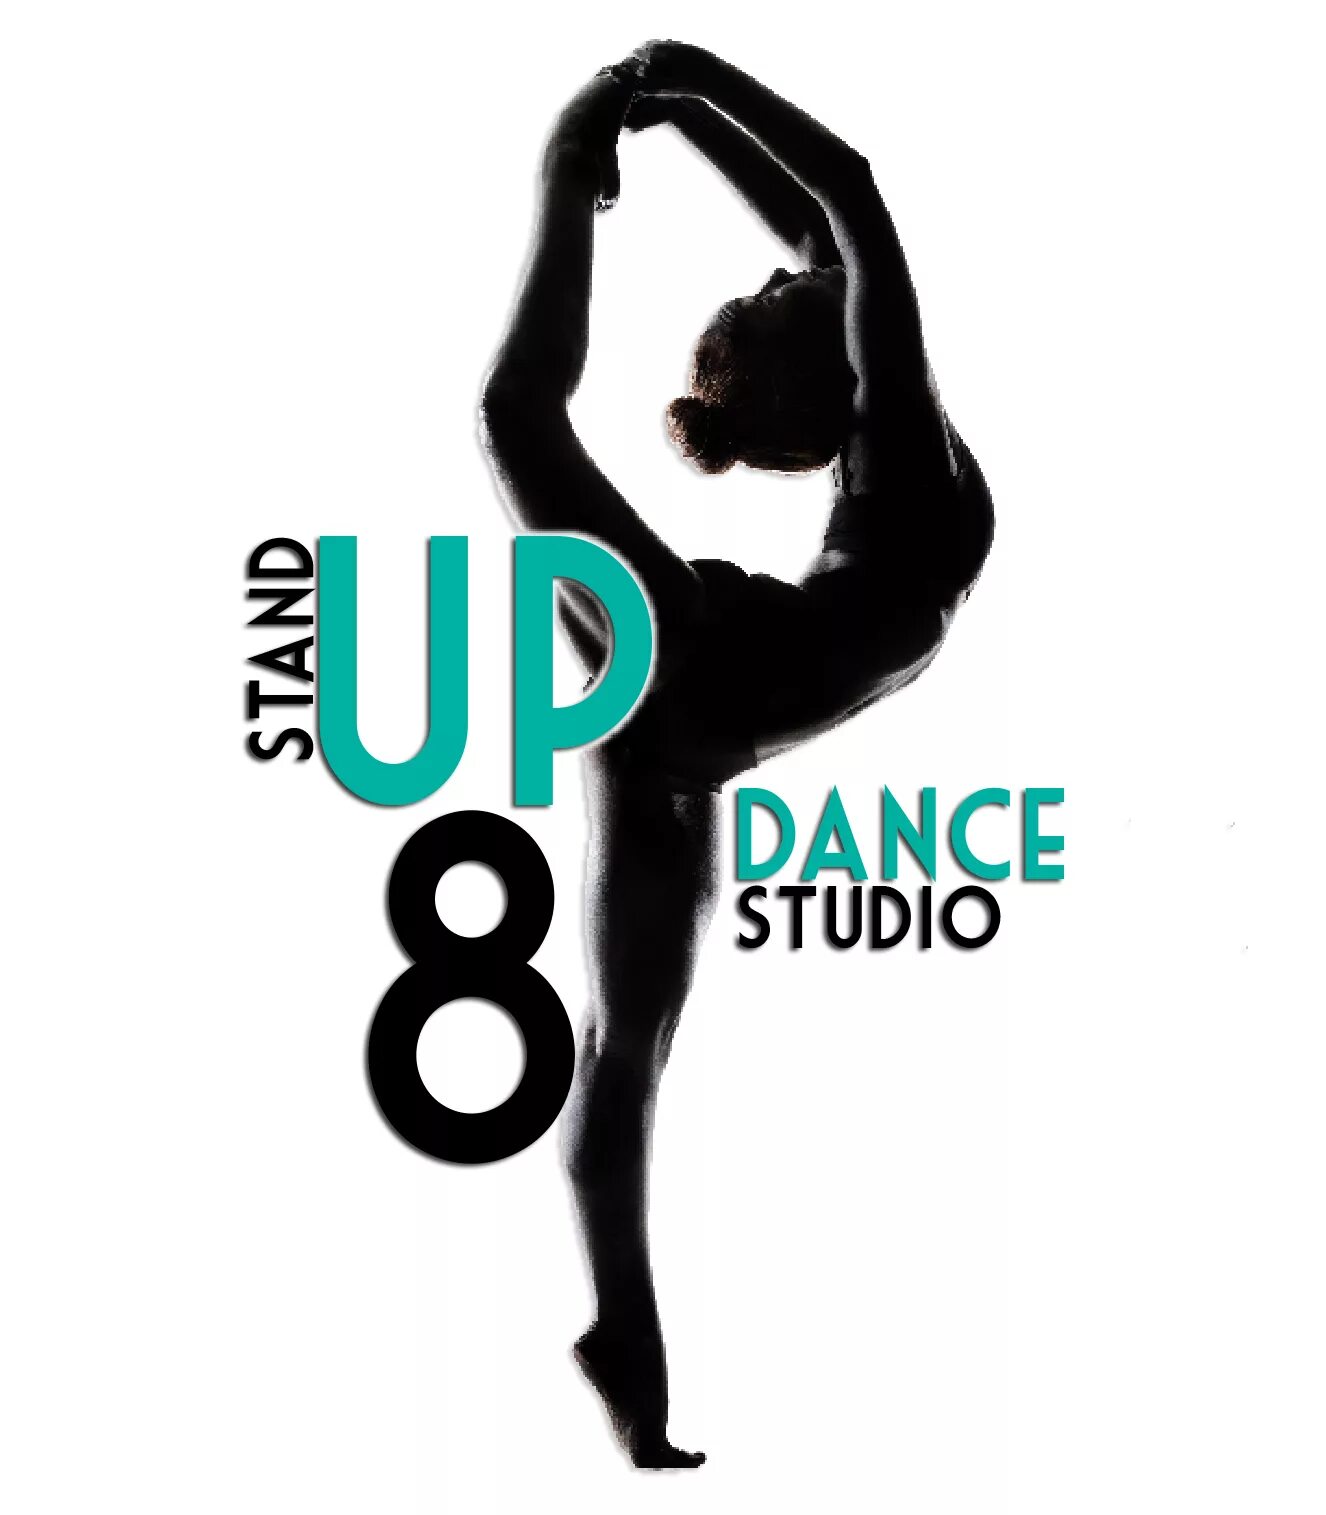 Stand up 8. Стенд студия танца. 8 Dance Studio Москва. Майка студия танца Stand up. Stand up Studio.